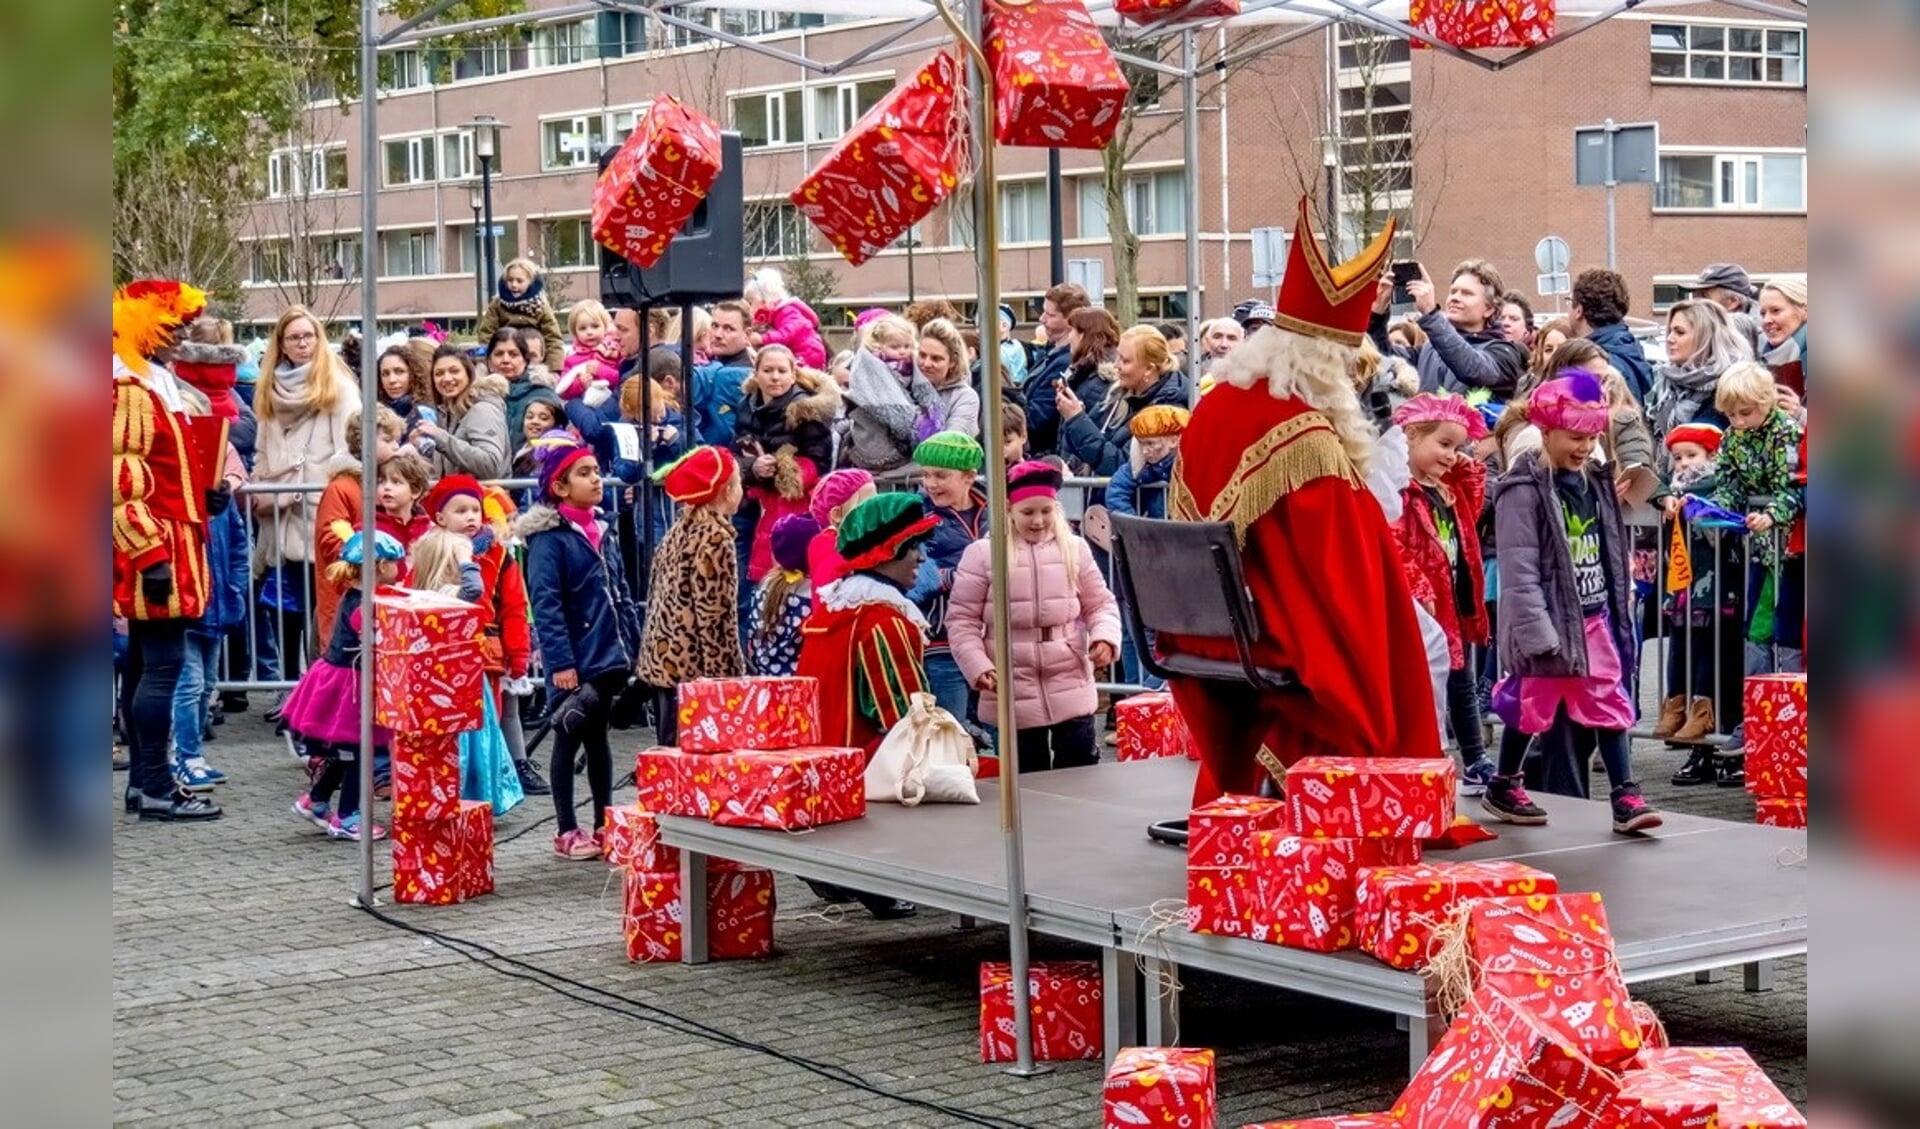 Drukbezochte meet & greet momenten met Sinterklaas, zoals hier bij winkelcentrum Santhorst, zullen er dit jaar niet zijn. 